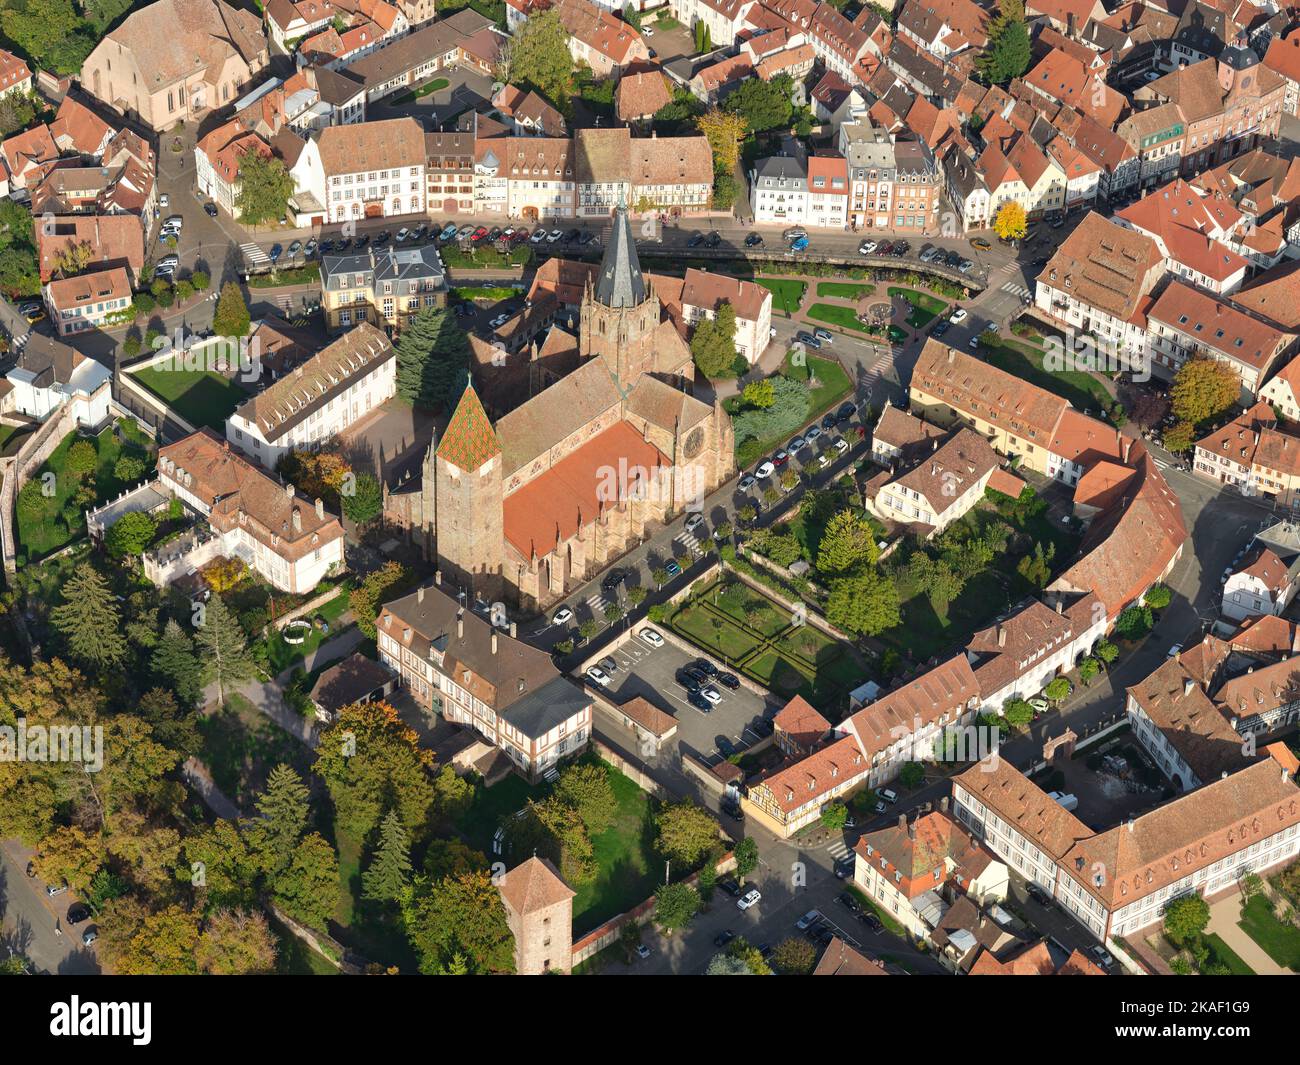 LUFTAUFNAHME. St. Peter und St. Paul's Church im historischen Zentrum von Wissembourg. Bas-Rhin, Alsace, Grand Est, Frankreich. Stockfoto